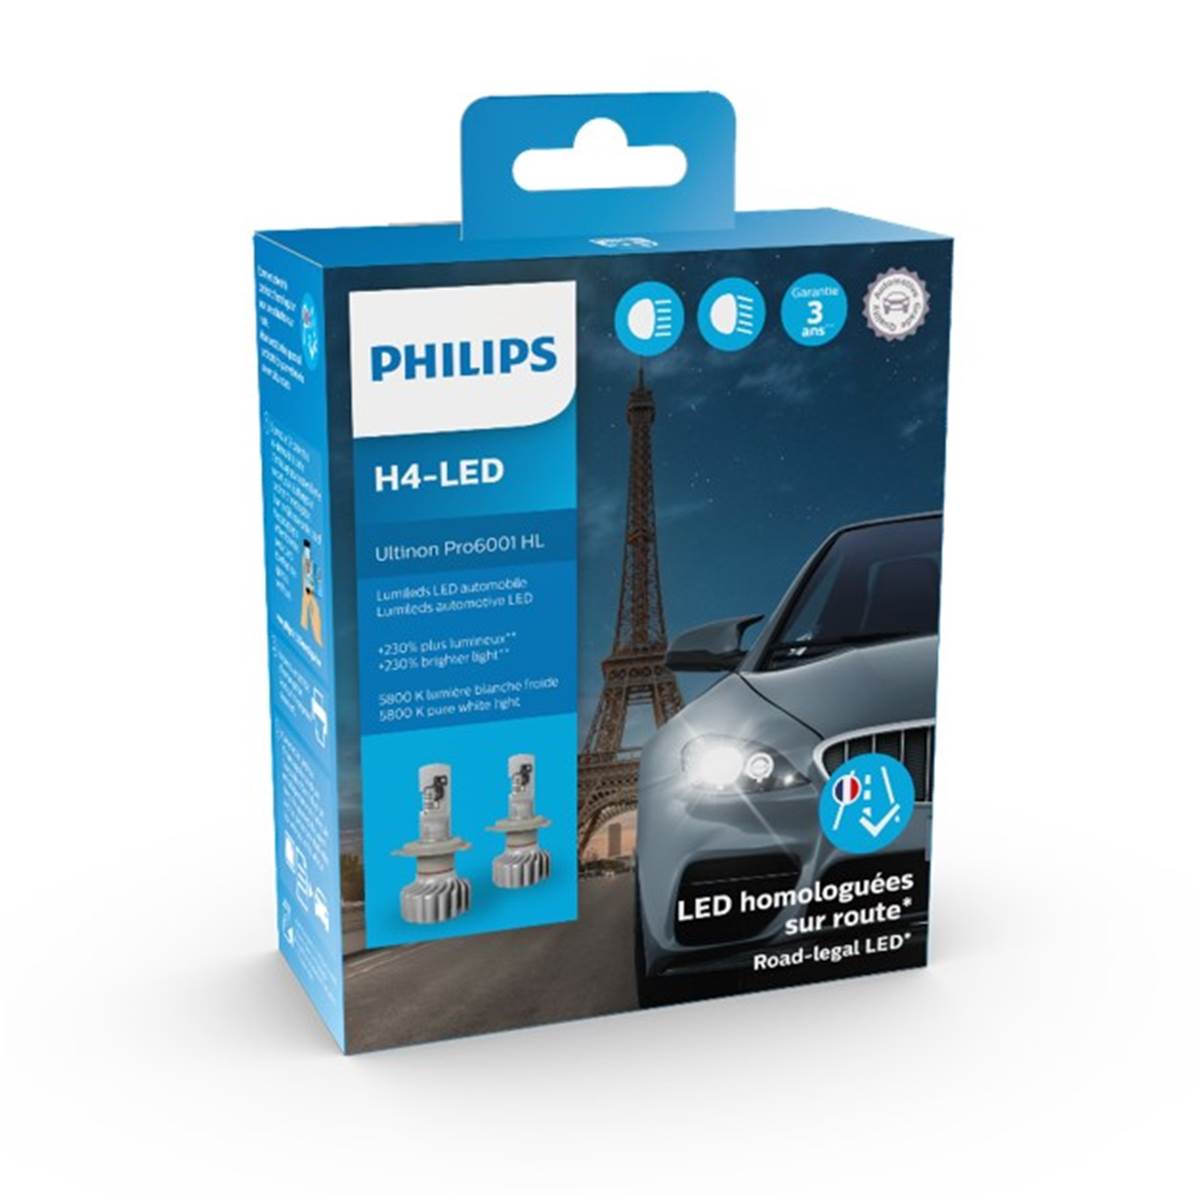 Ampoules (2 pièces) Led H4 Philips Ultinon Pro6001 Hl (homologuées)